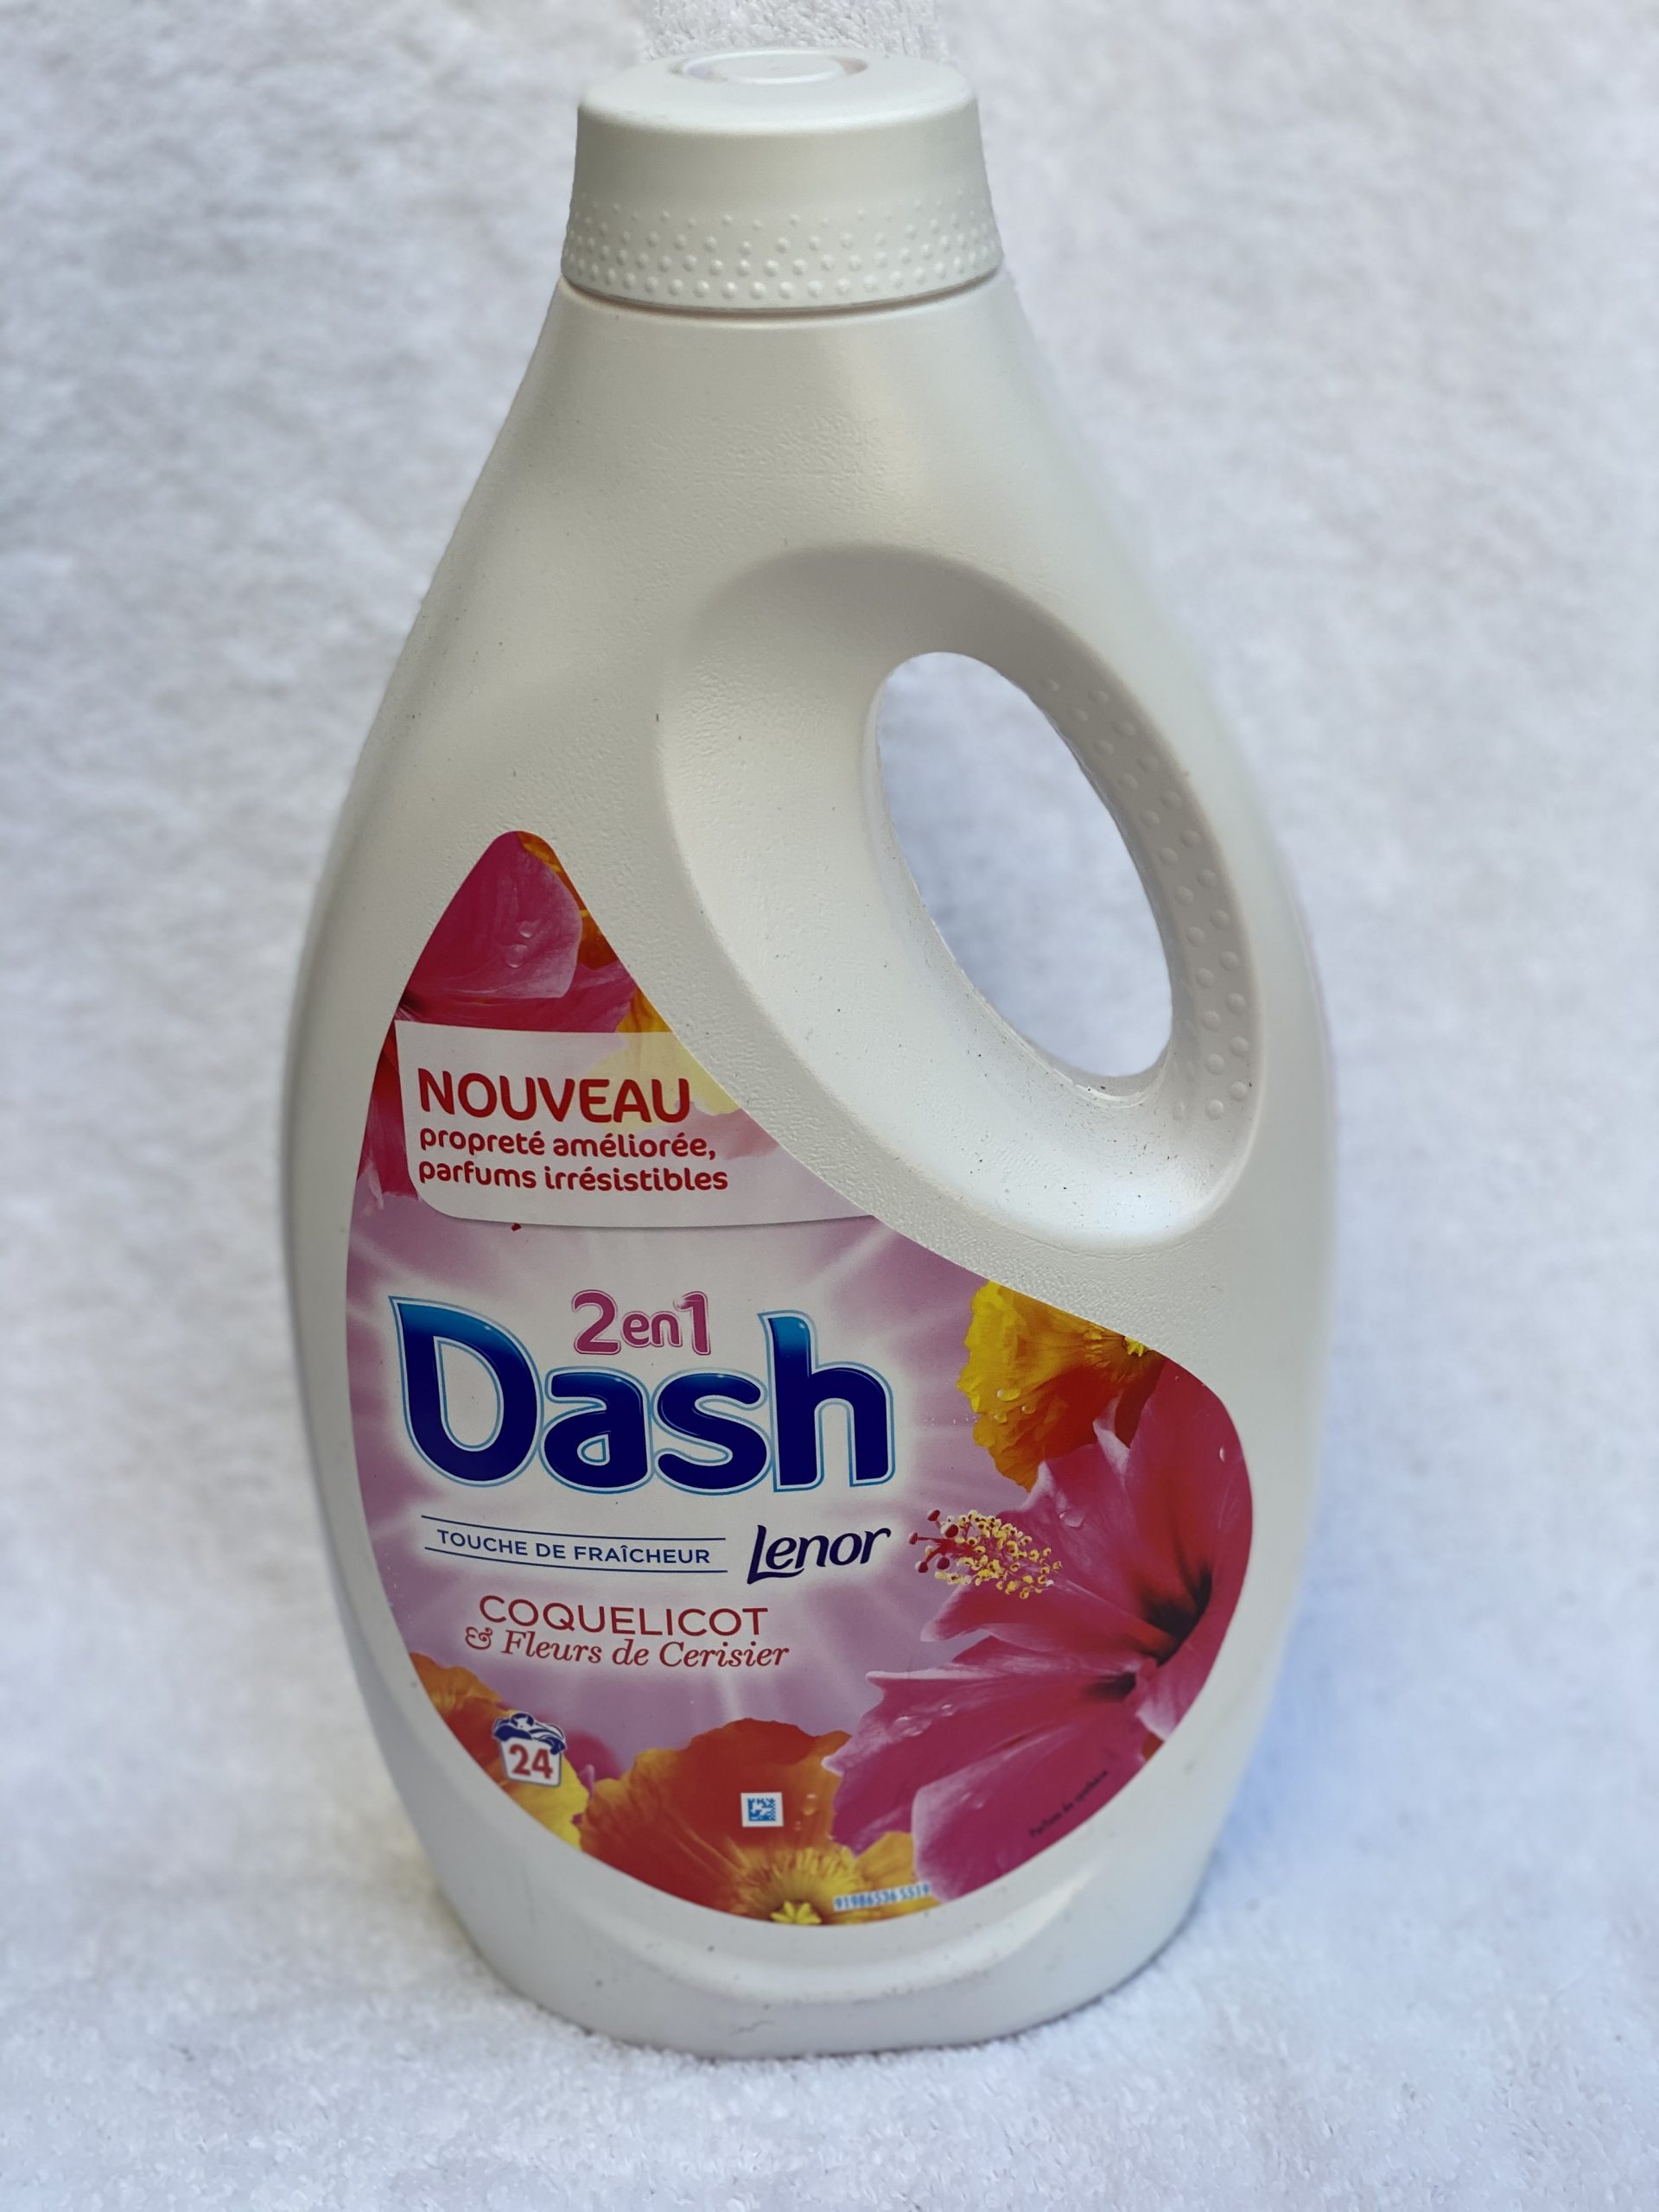 Dash 2en1 Coquelicot & Fleurs De Cerisier 24 lavages - Strass Destock